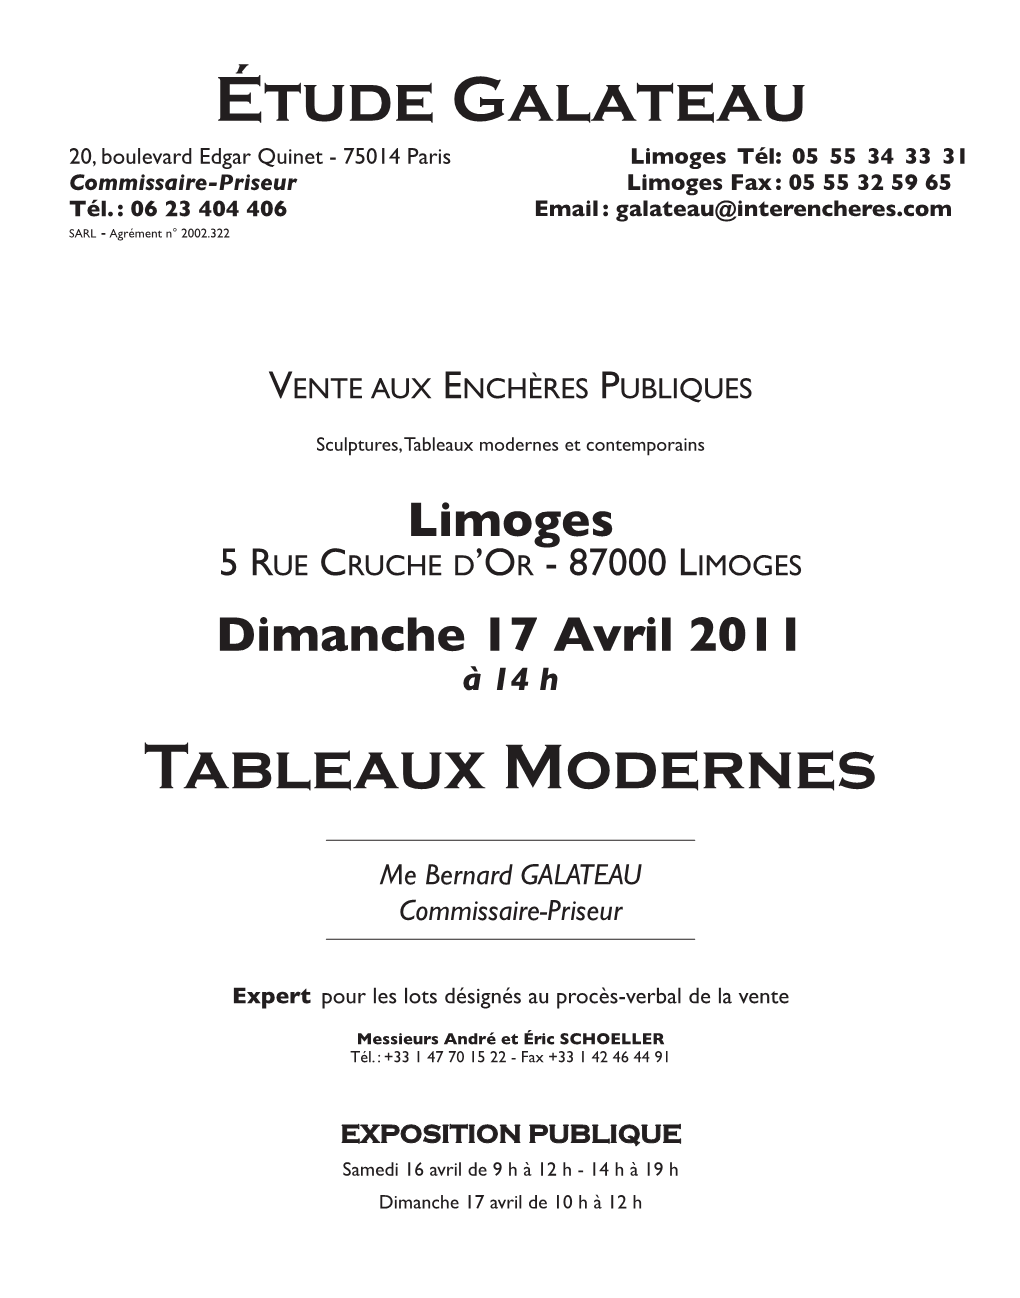 Limoges Tél: 05 55 34 33 31 Commissaire-Priseur Limoges Fax : 05 55 32 59 65 Tél